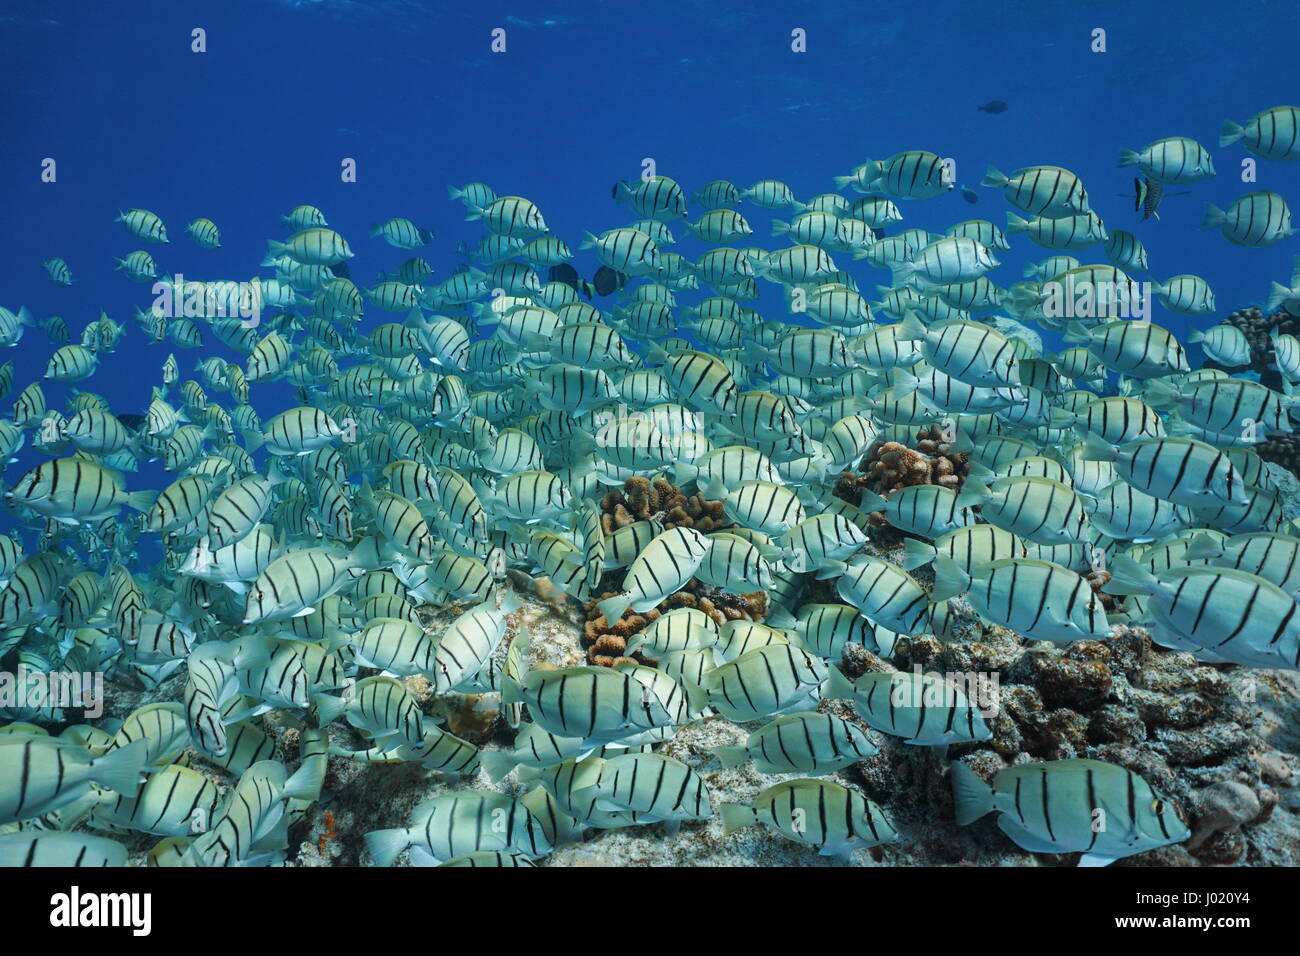 Escuela de peces tropicales del océano Pacífico subacuática, condenar el Pez Cirujano Acanthurus triostegus, Tuamotu, Rangiroa, Polinesia Francesa Foto de stock